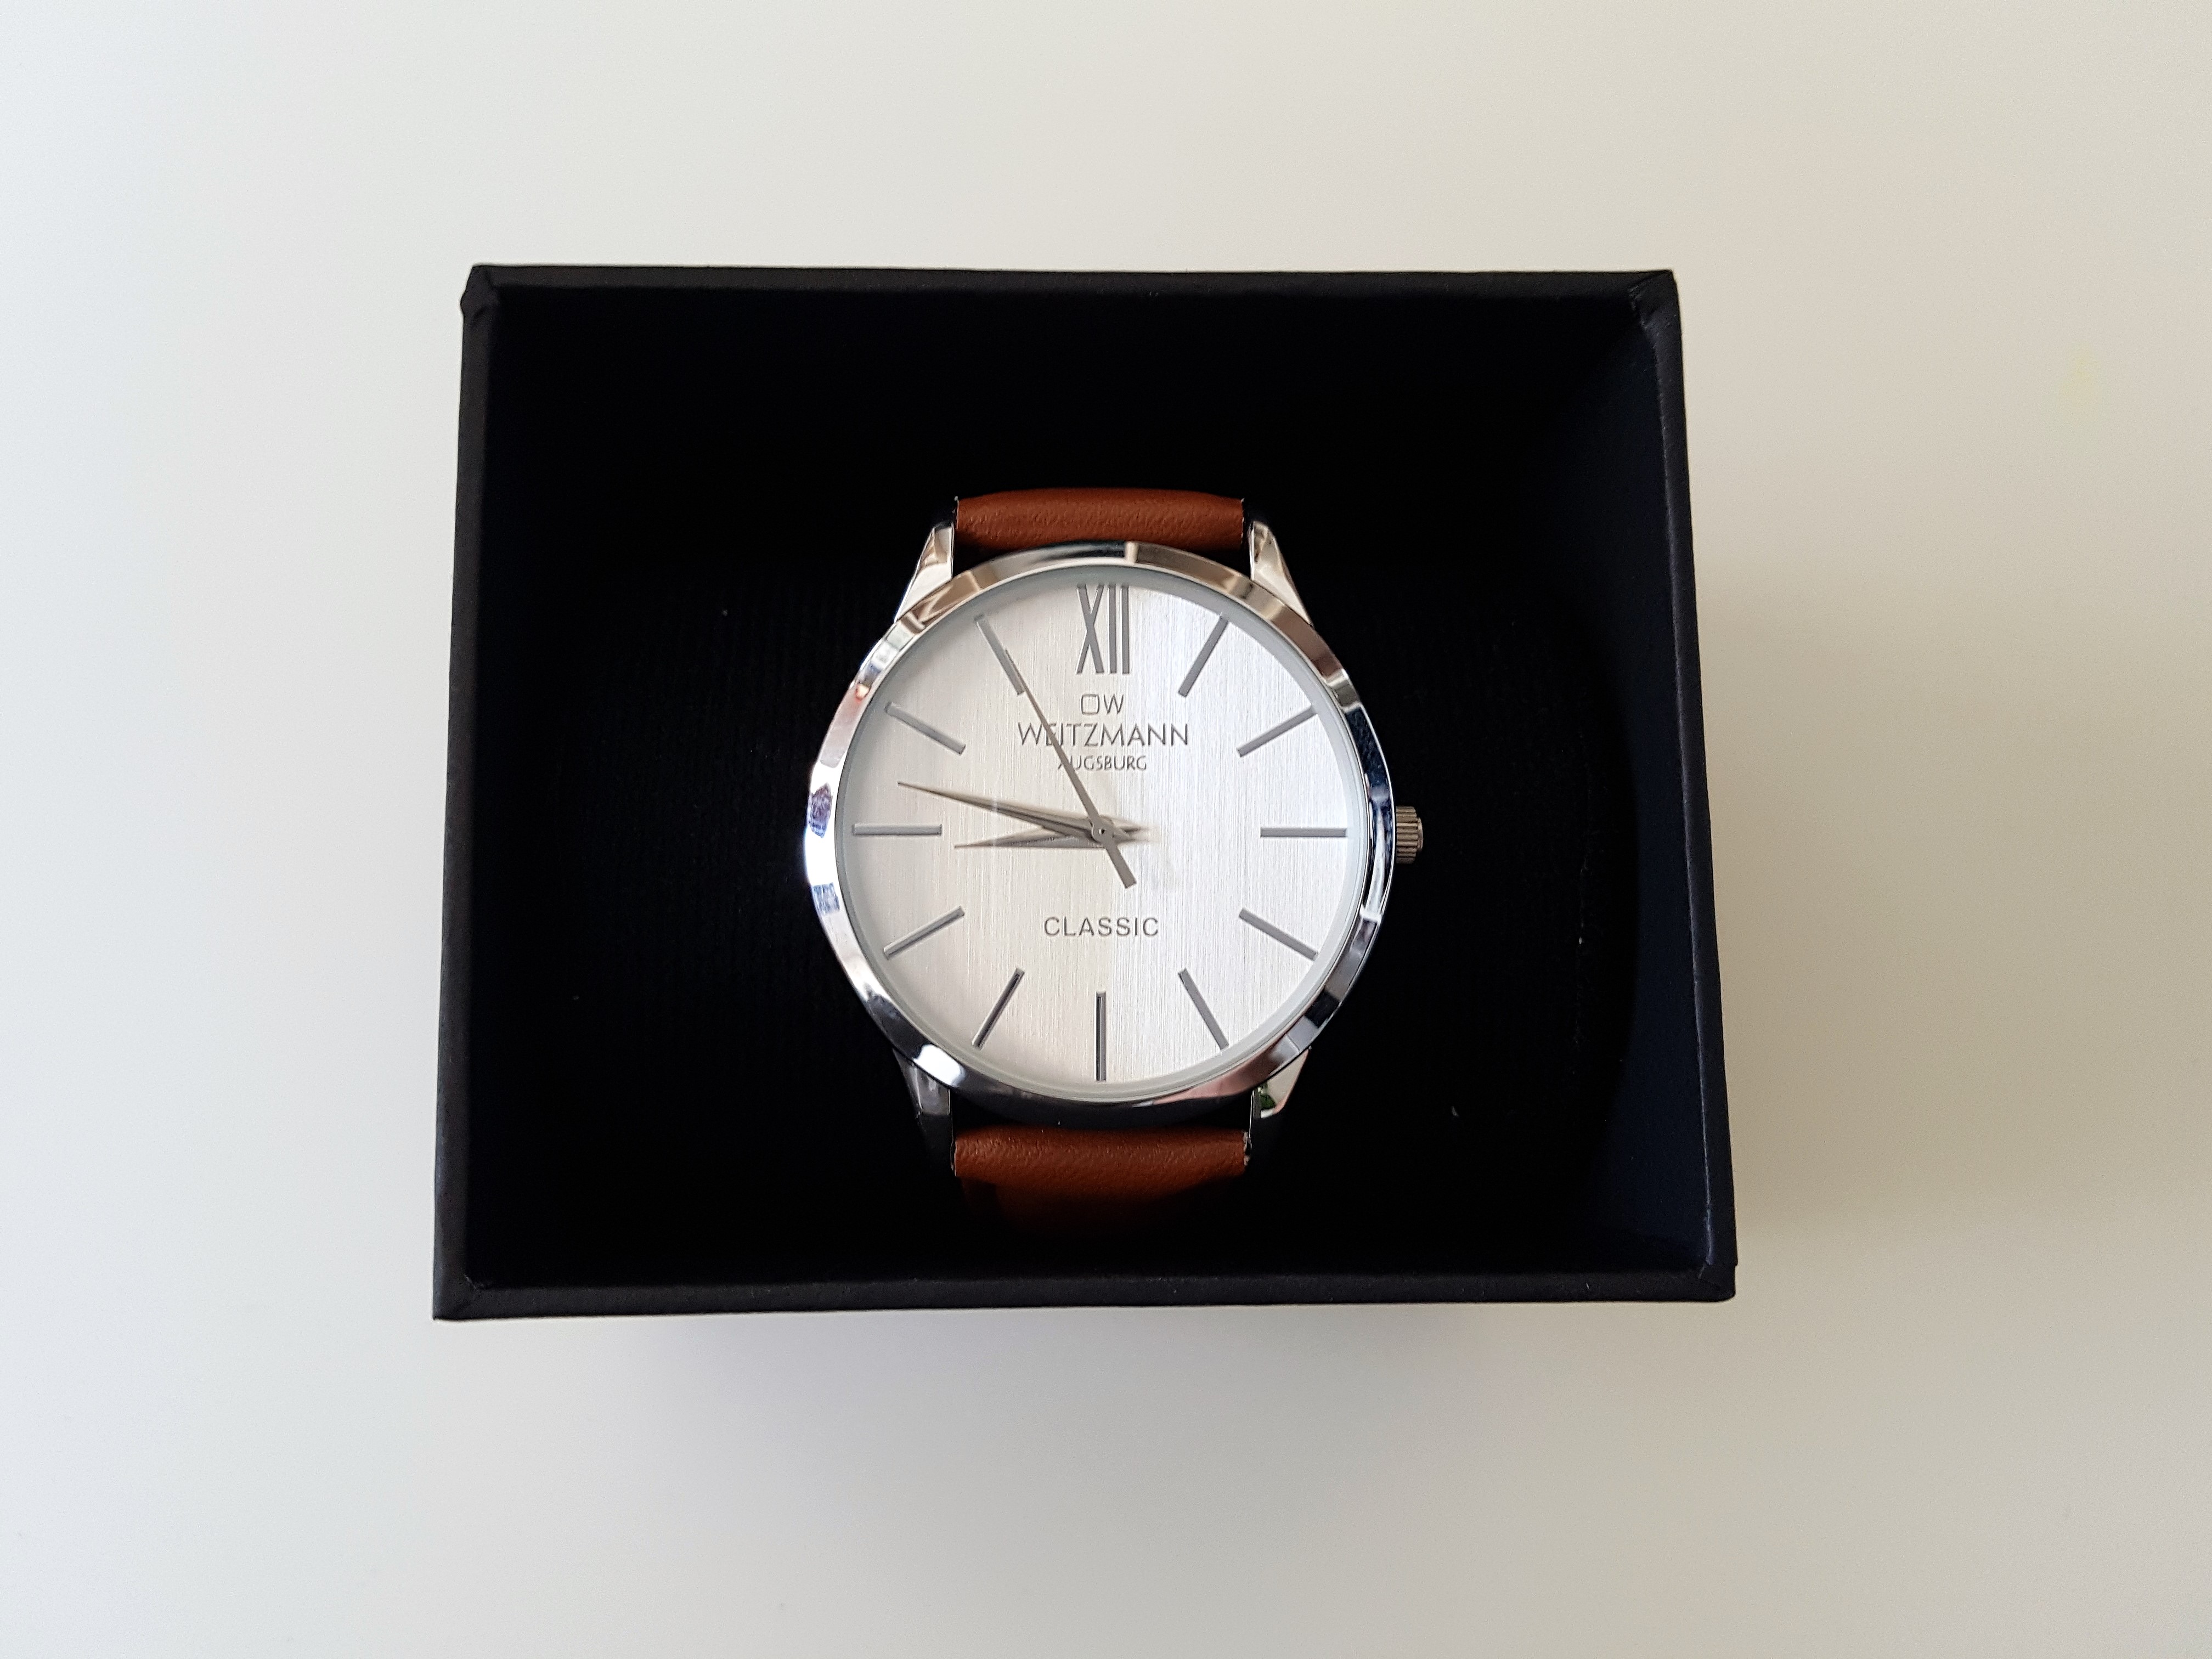 Produkttest: Otto Weitzmann – klassische Herren-Uhr